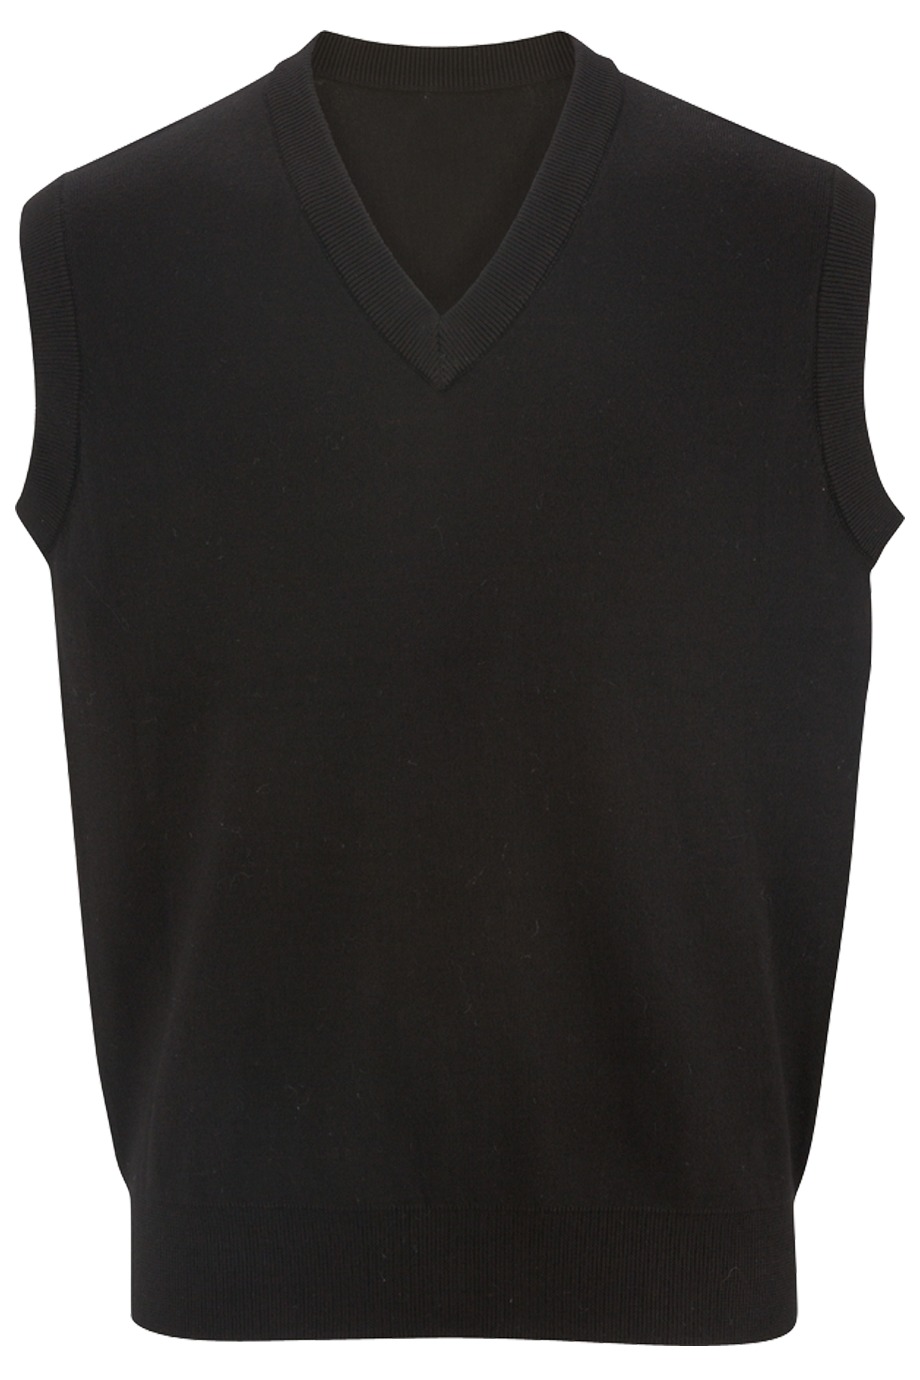 Embroider Edwards Garment 4701 - V-Neck Cotton Sweater Vest $27.12 - or ...